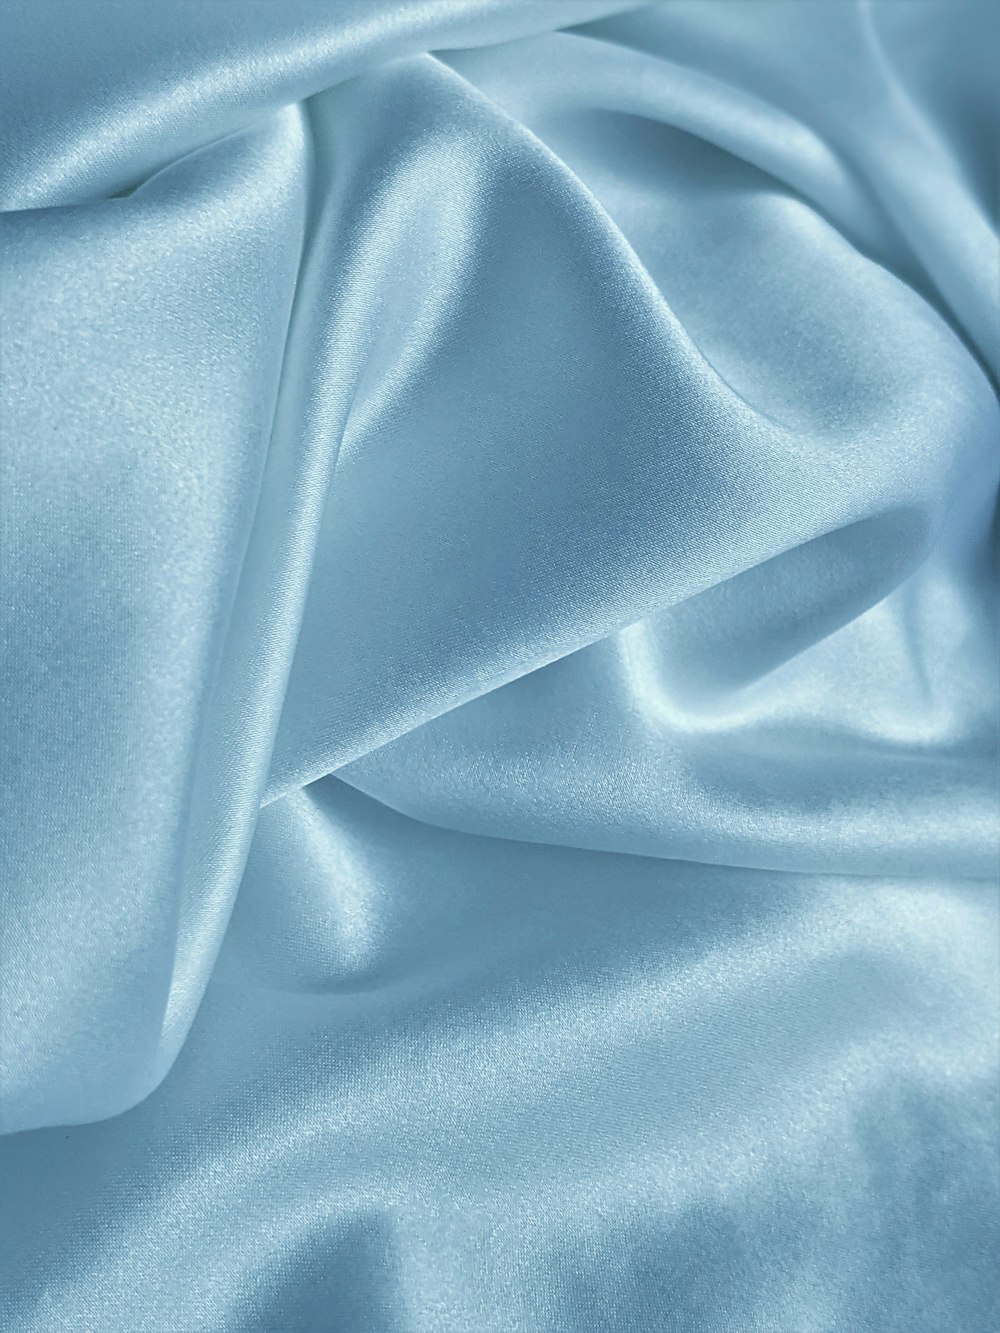 Textile bleu sur textile blanc